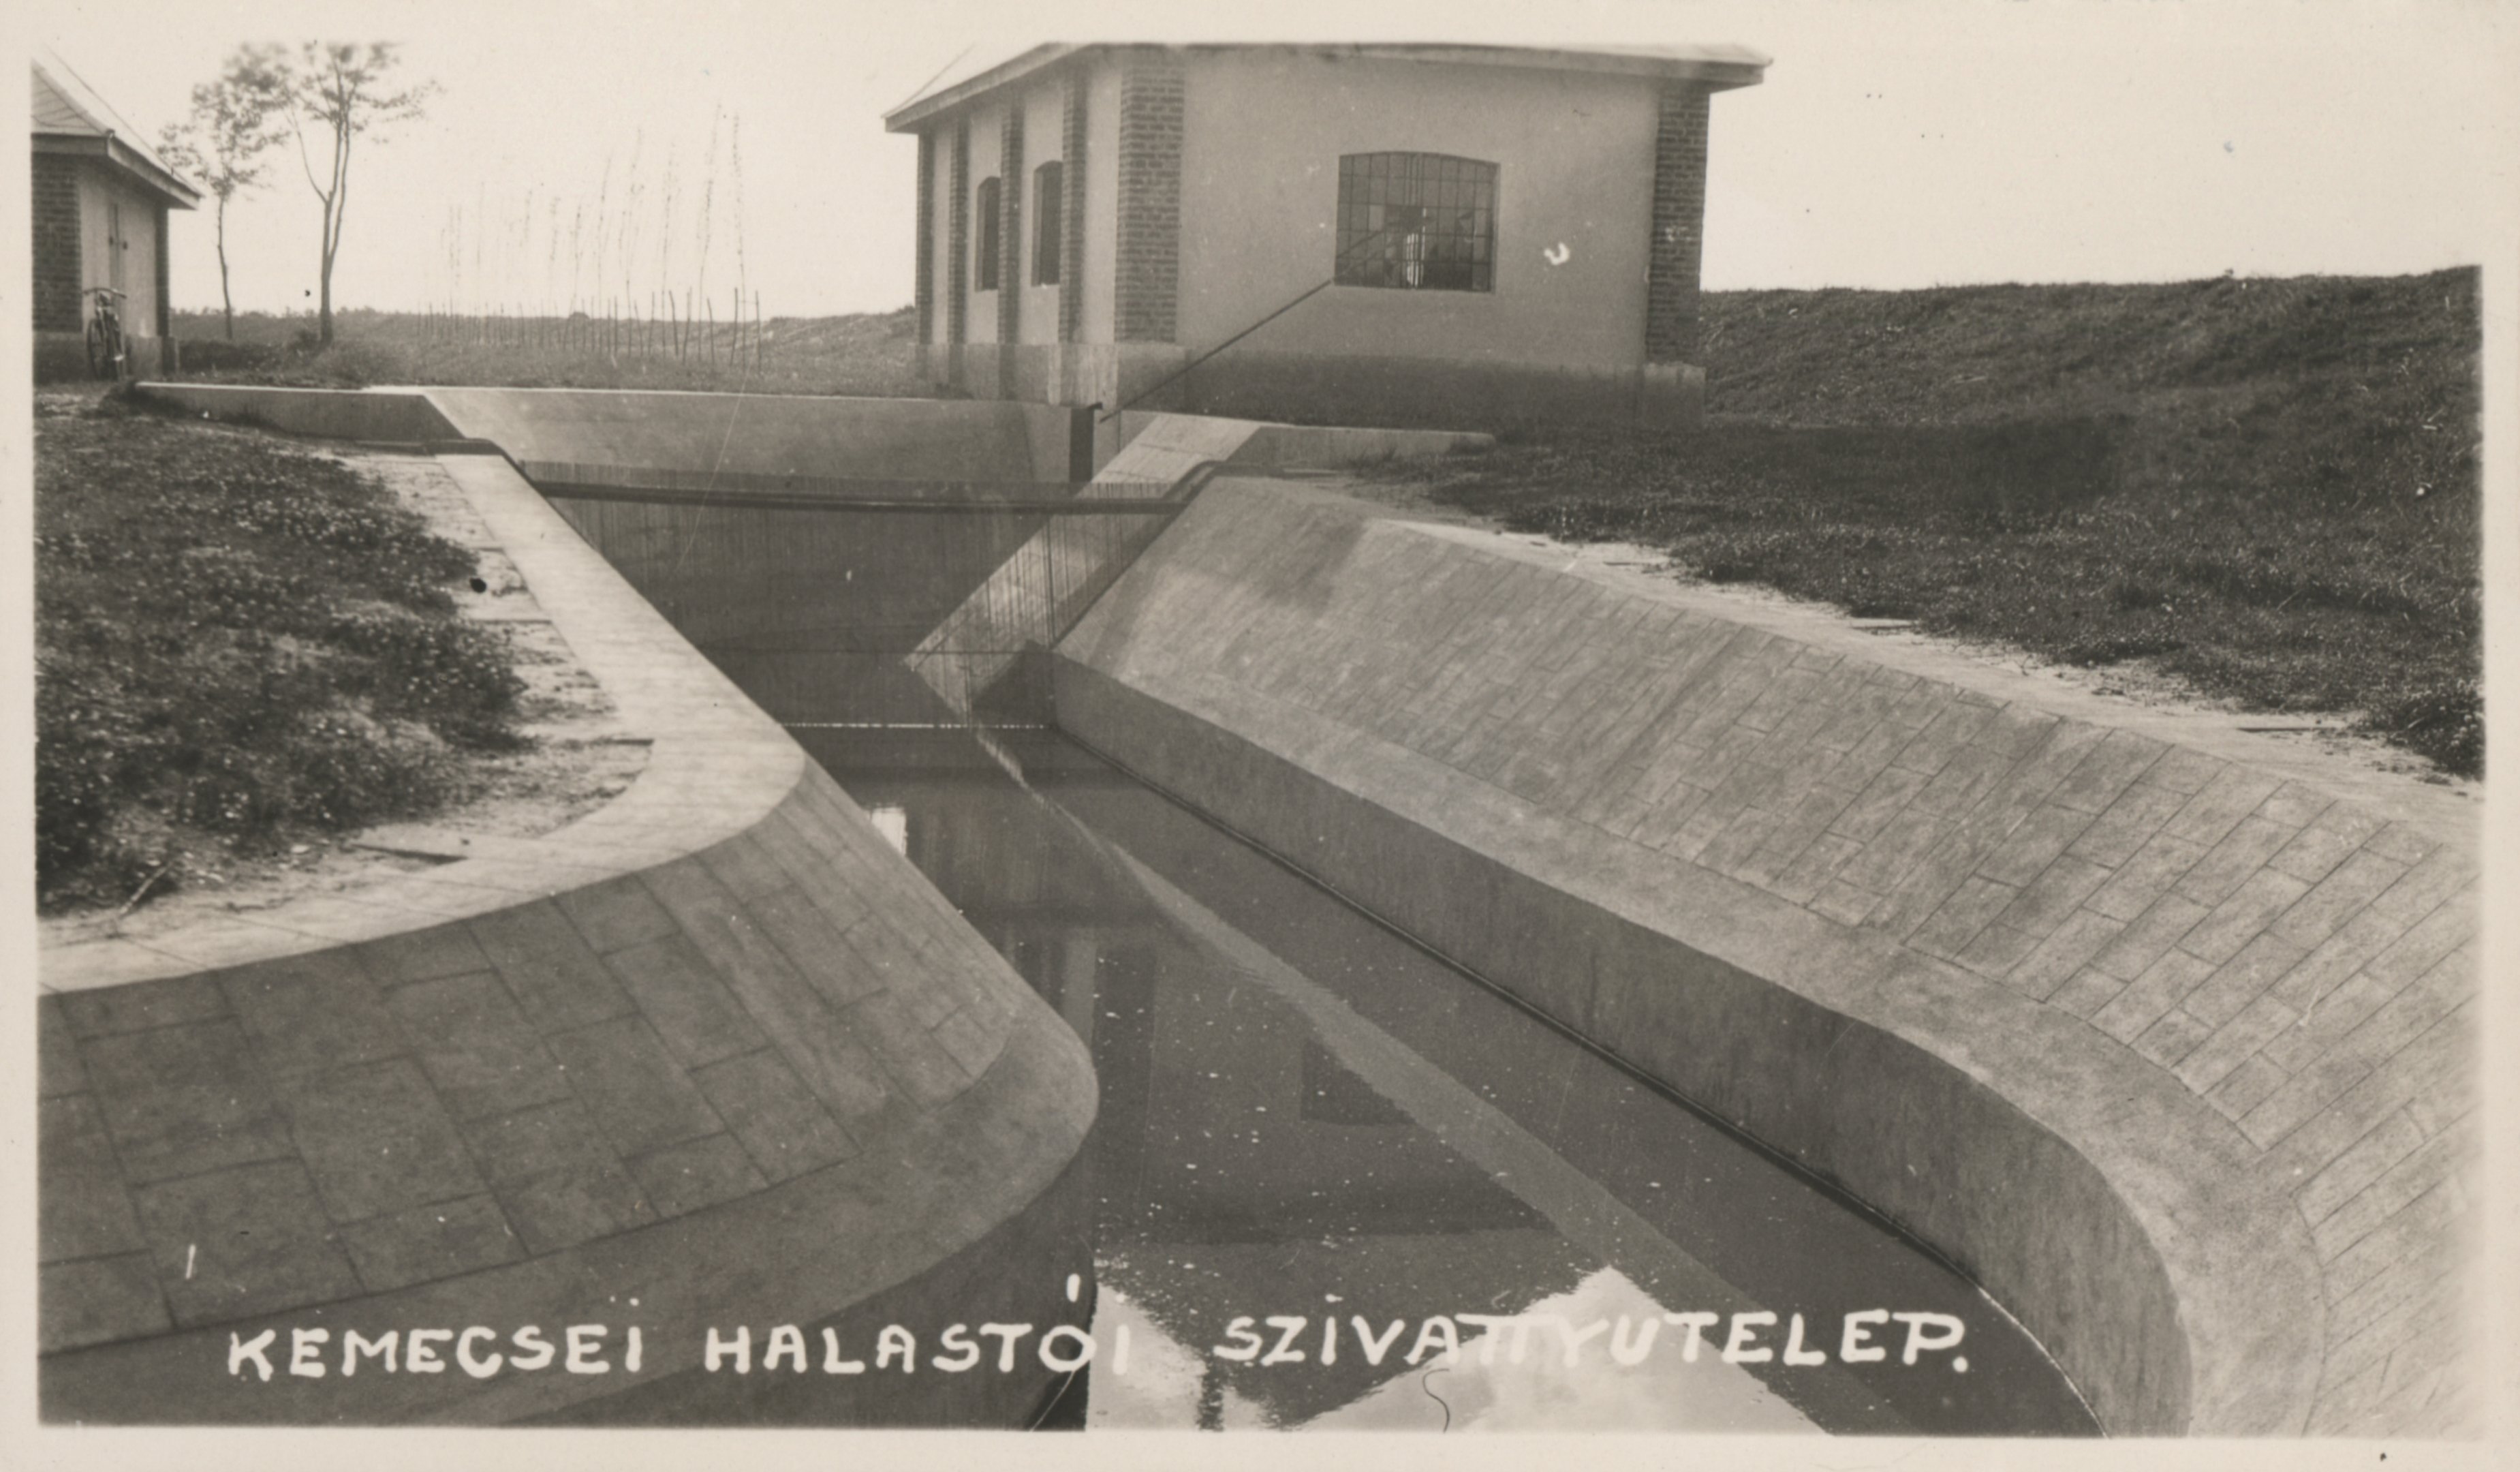 Kemecsei halastói szivattyútelep (Magyar Környezetvédelmi és Vízügyi Múzeum - Duna Múzeum CC BY-NC-SA)